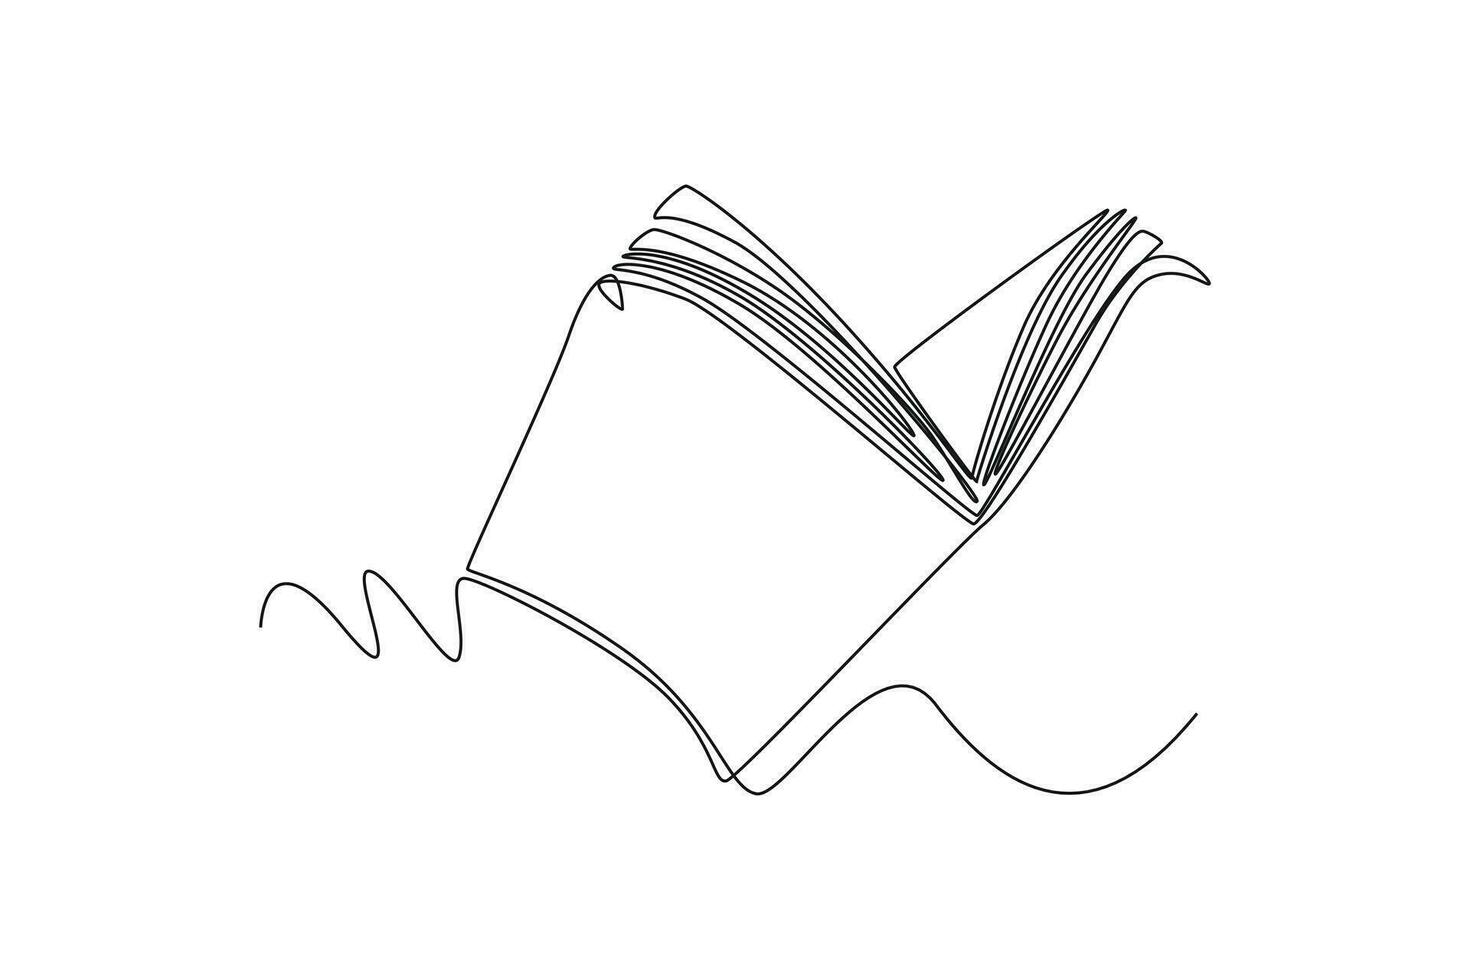 singolo uno linea disegno libri e lettura concetto. continuo linea disegnare design grafico vettore illustrazione.